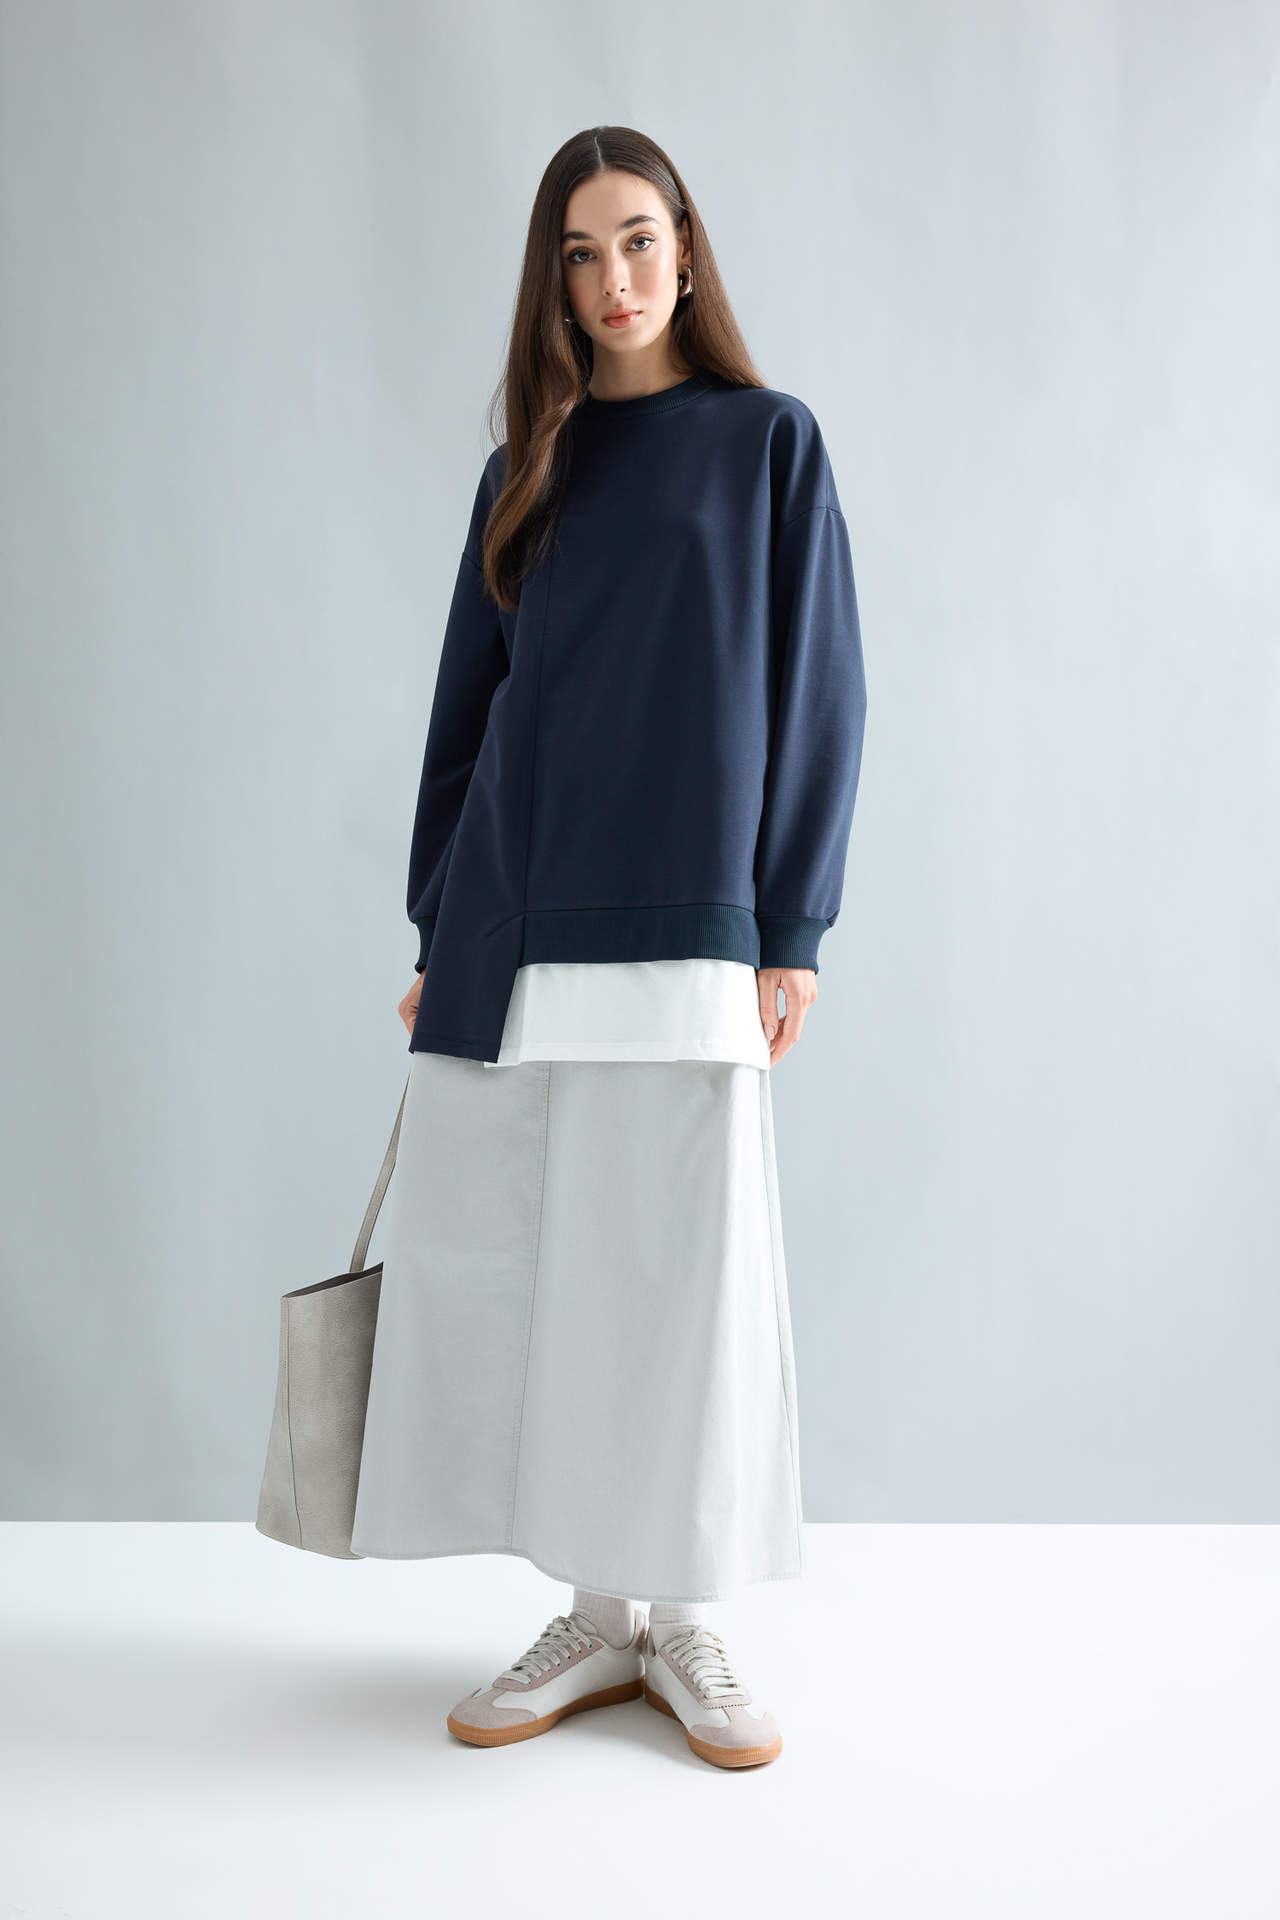 DEFACTO A Cut Wowen Fabrics Maxi Skirt